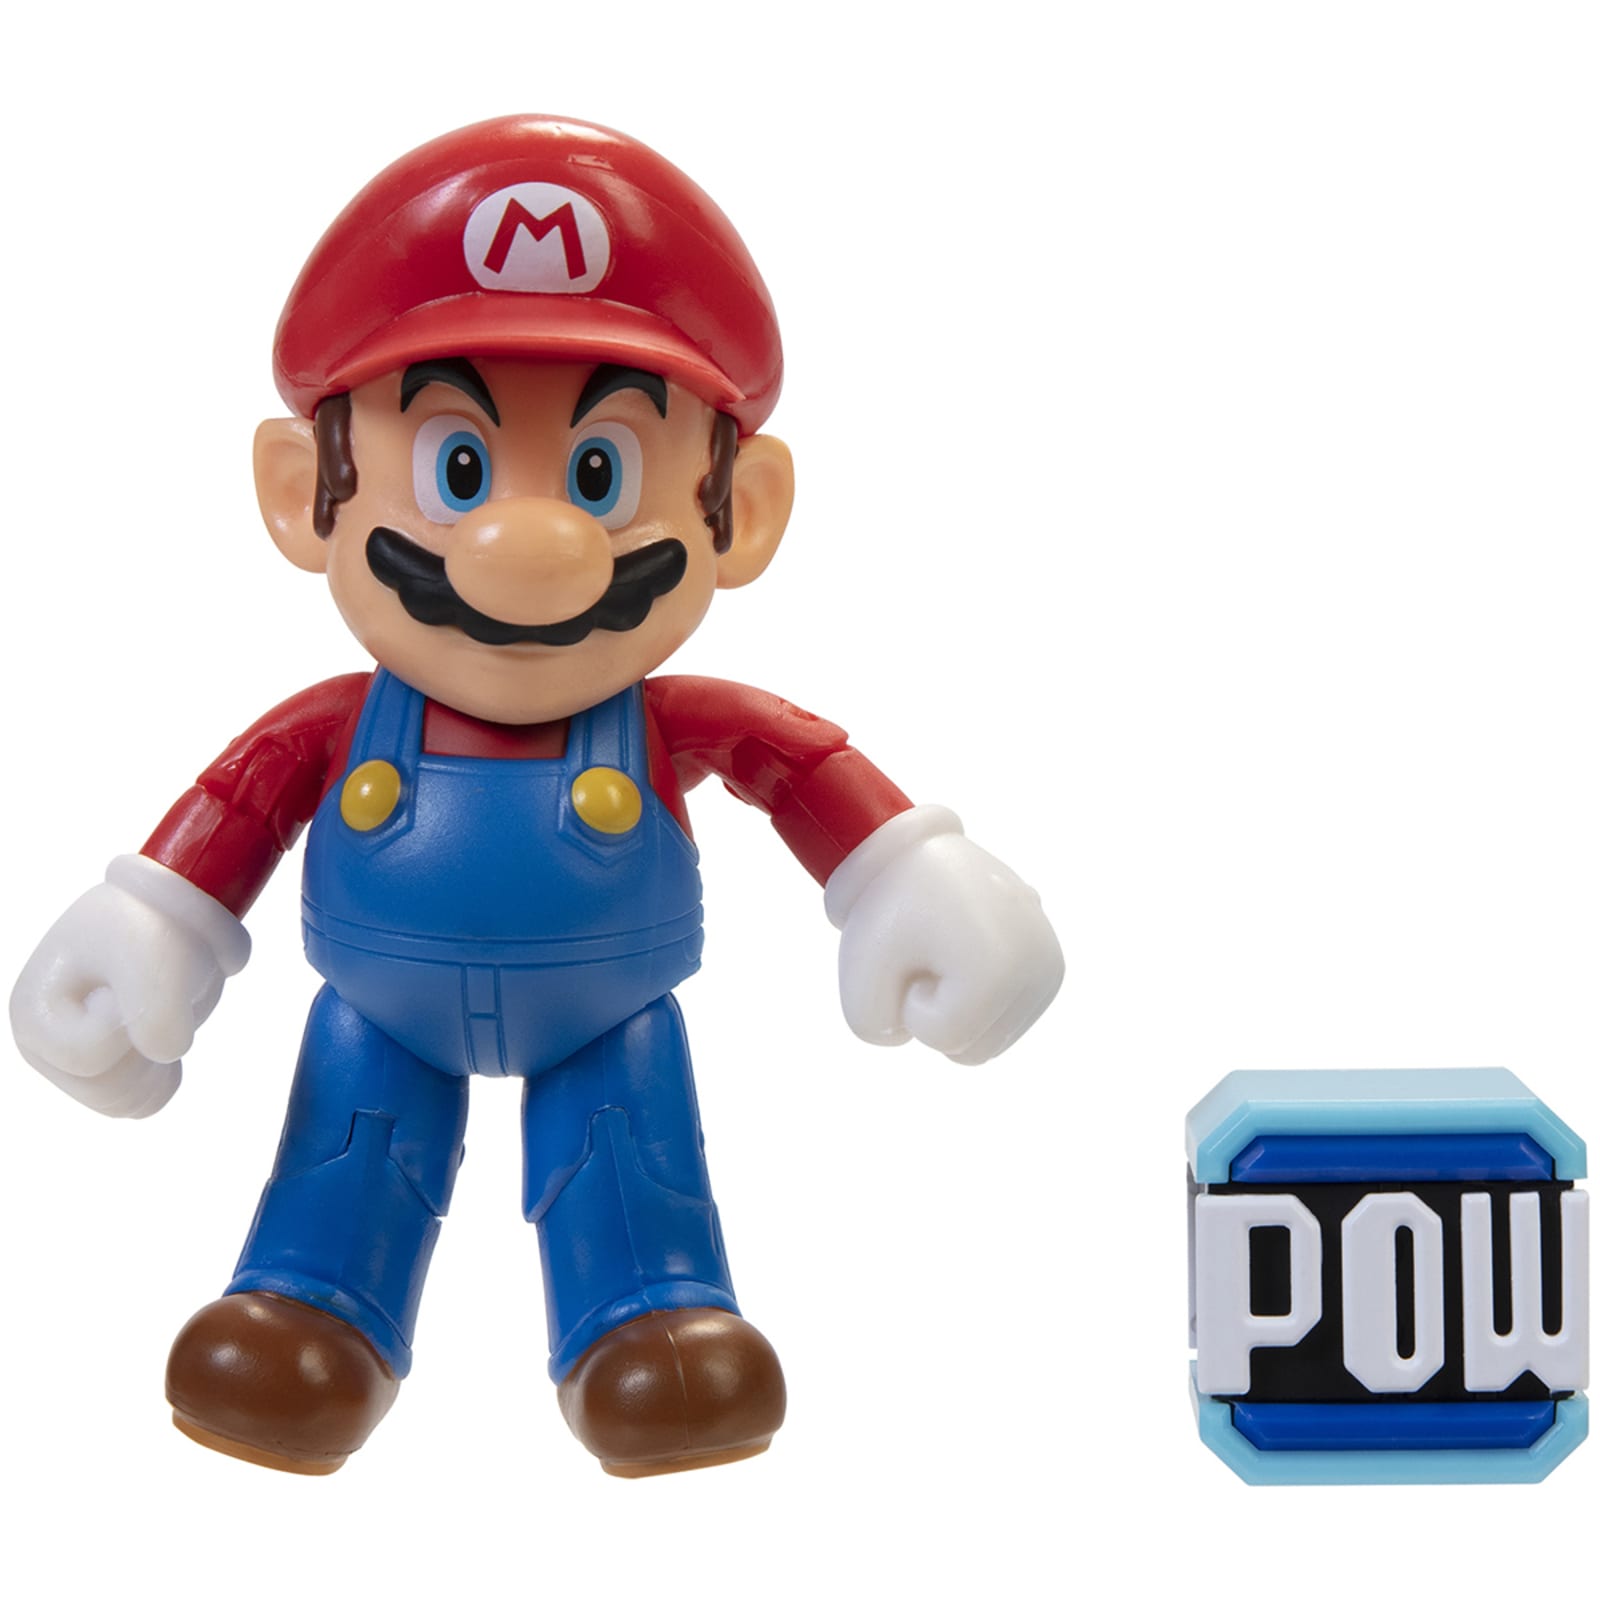  Popco Super Mario Set of 6 Mini Figure Mario, Peach, Toad,  Luigi, Yoshi & Donkey Kong : Toys & Games